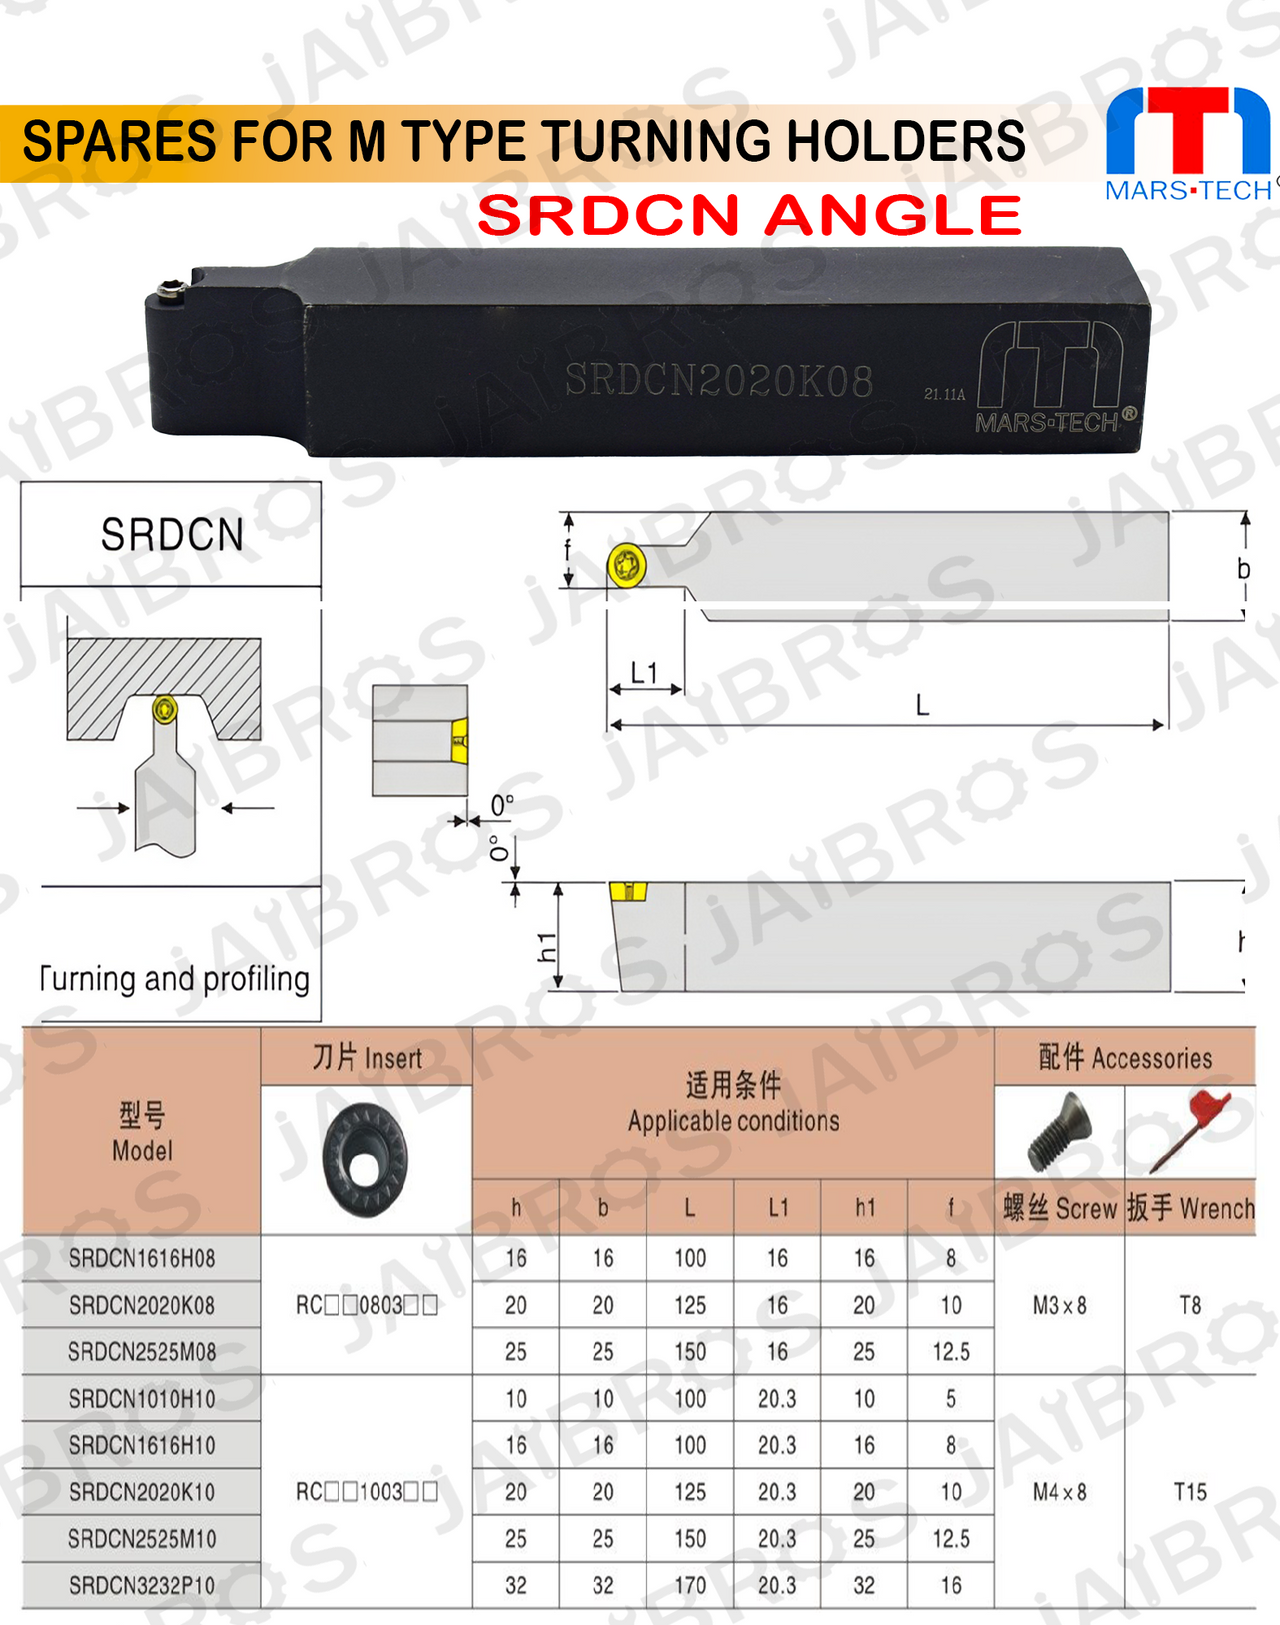 SRDCN 2525 RC1204 insert holder for turining radius pack of 1